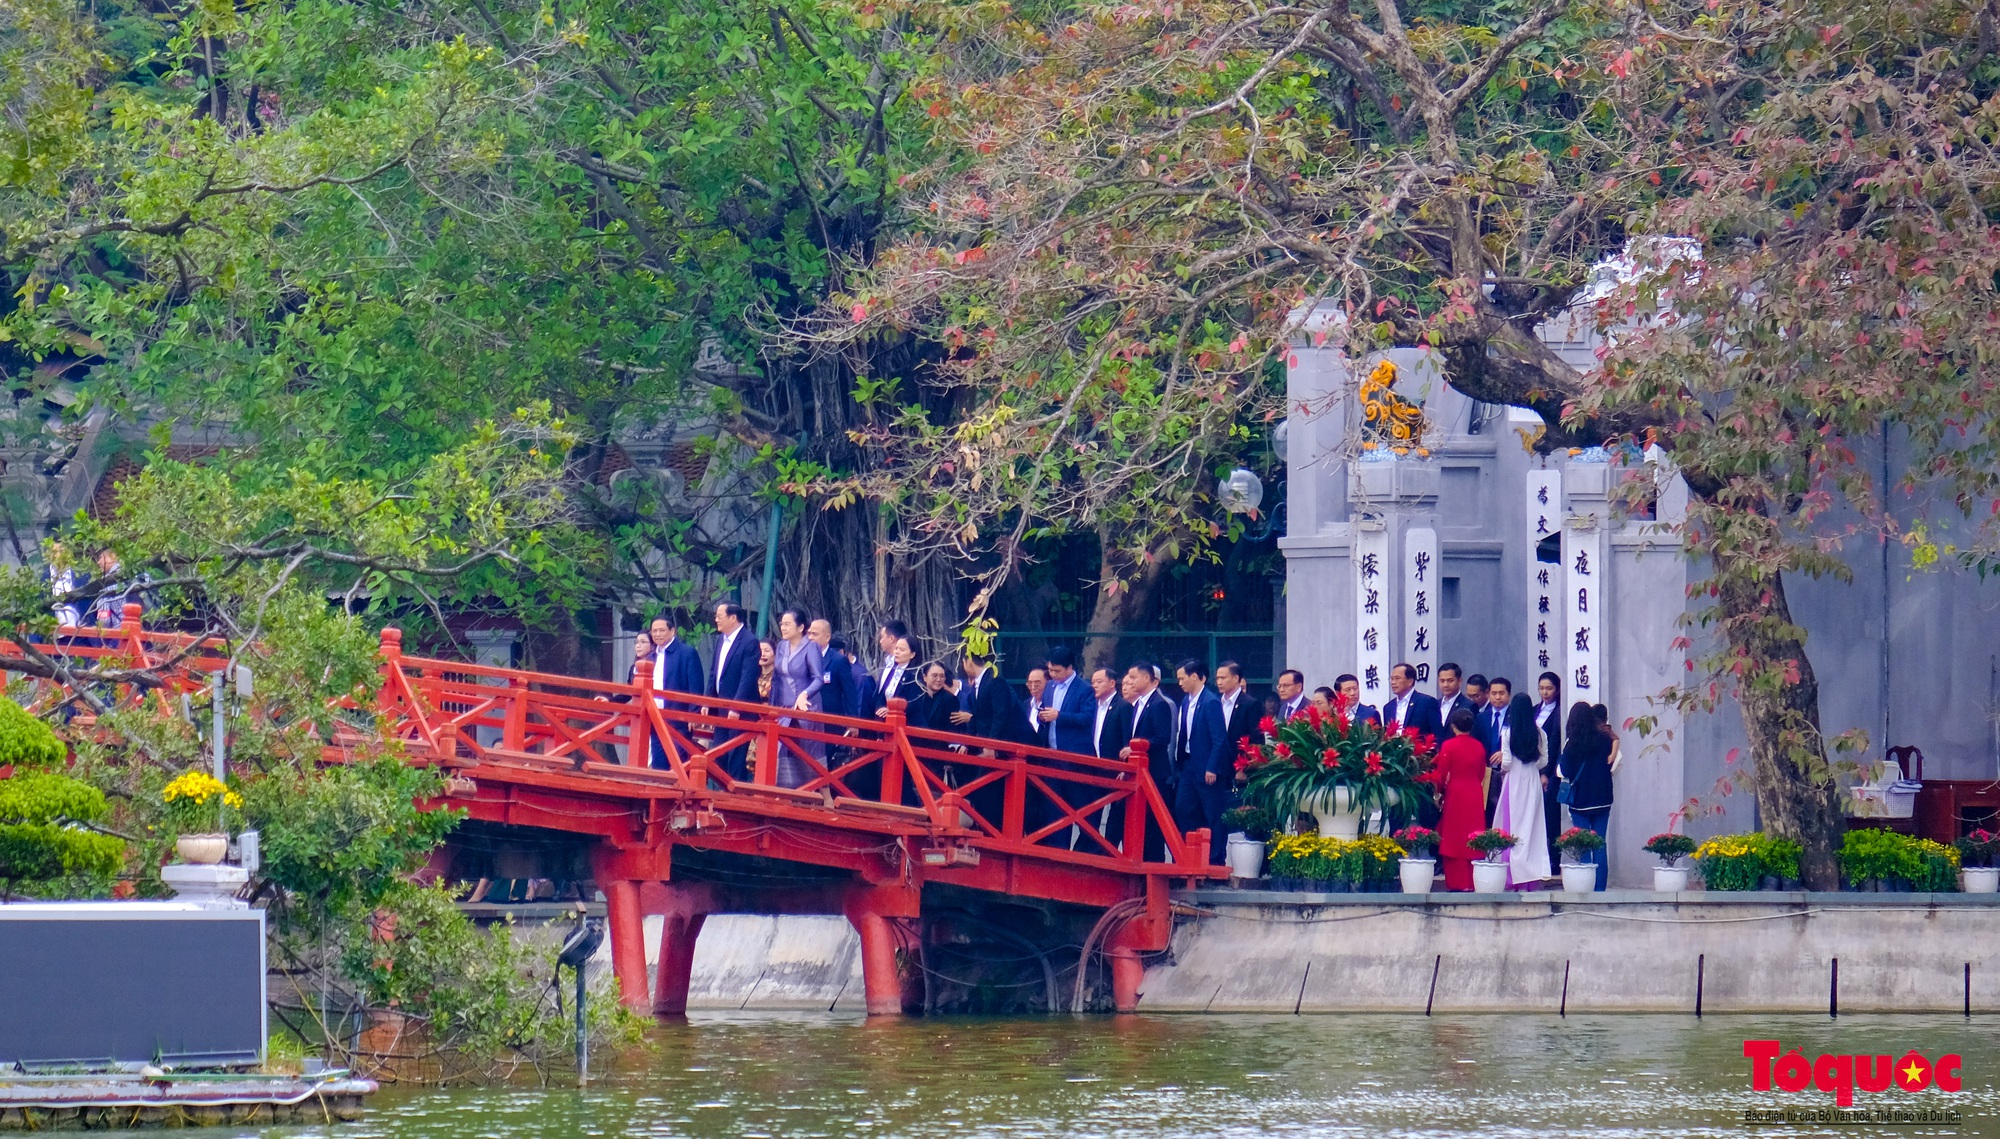 Thủ tướng Việt Nam và Lào cùng hai Phu nhân thăm đền Ngọc Sơn, dạo phố đi bộ Hồ Hoàn Kiếm - Ảnh 7.